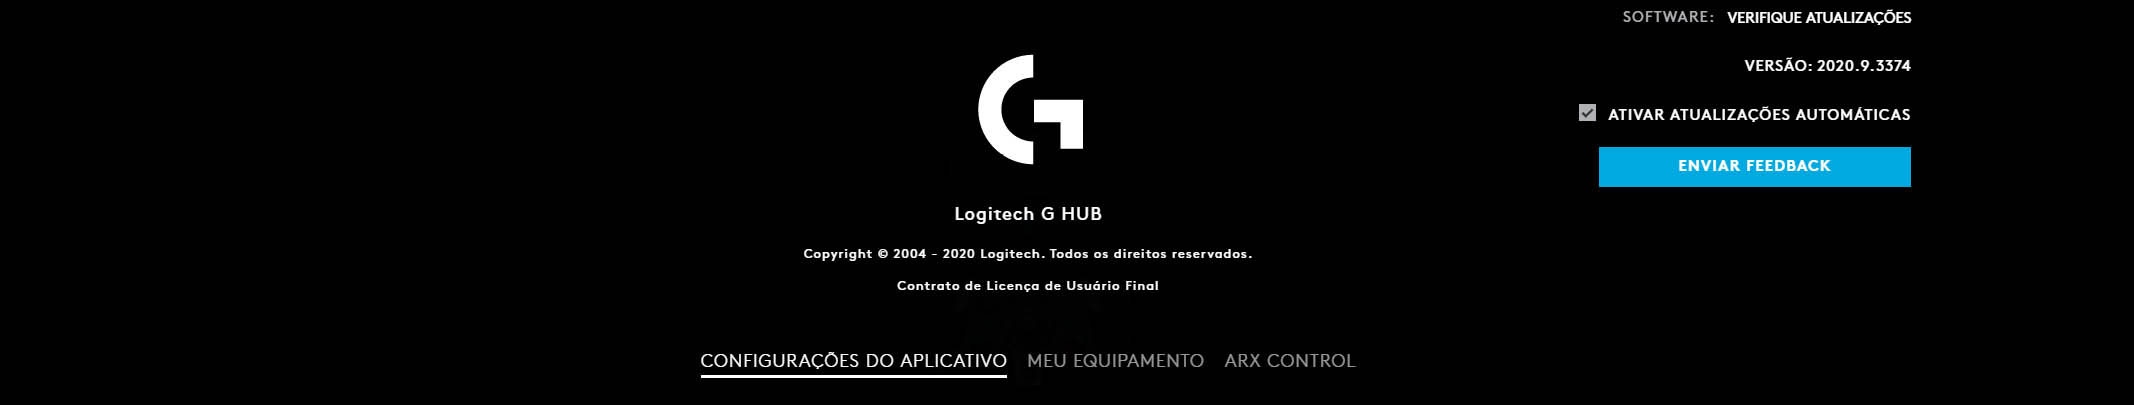 Instalación Volante Logitech G29 para Google Stadia PC (paso a paso)